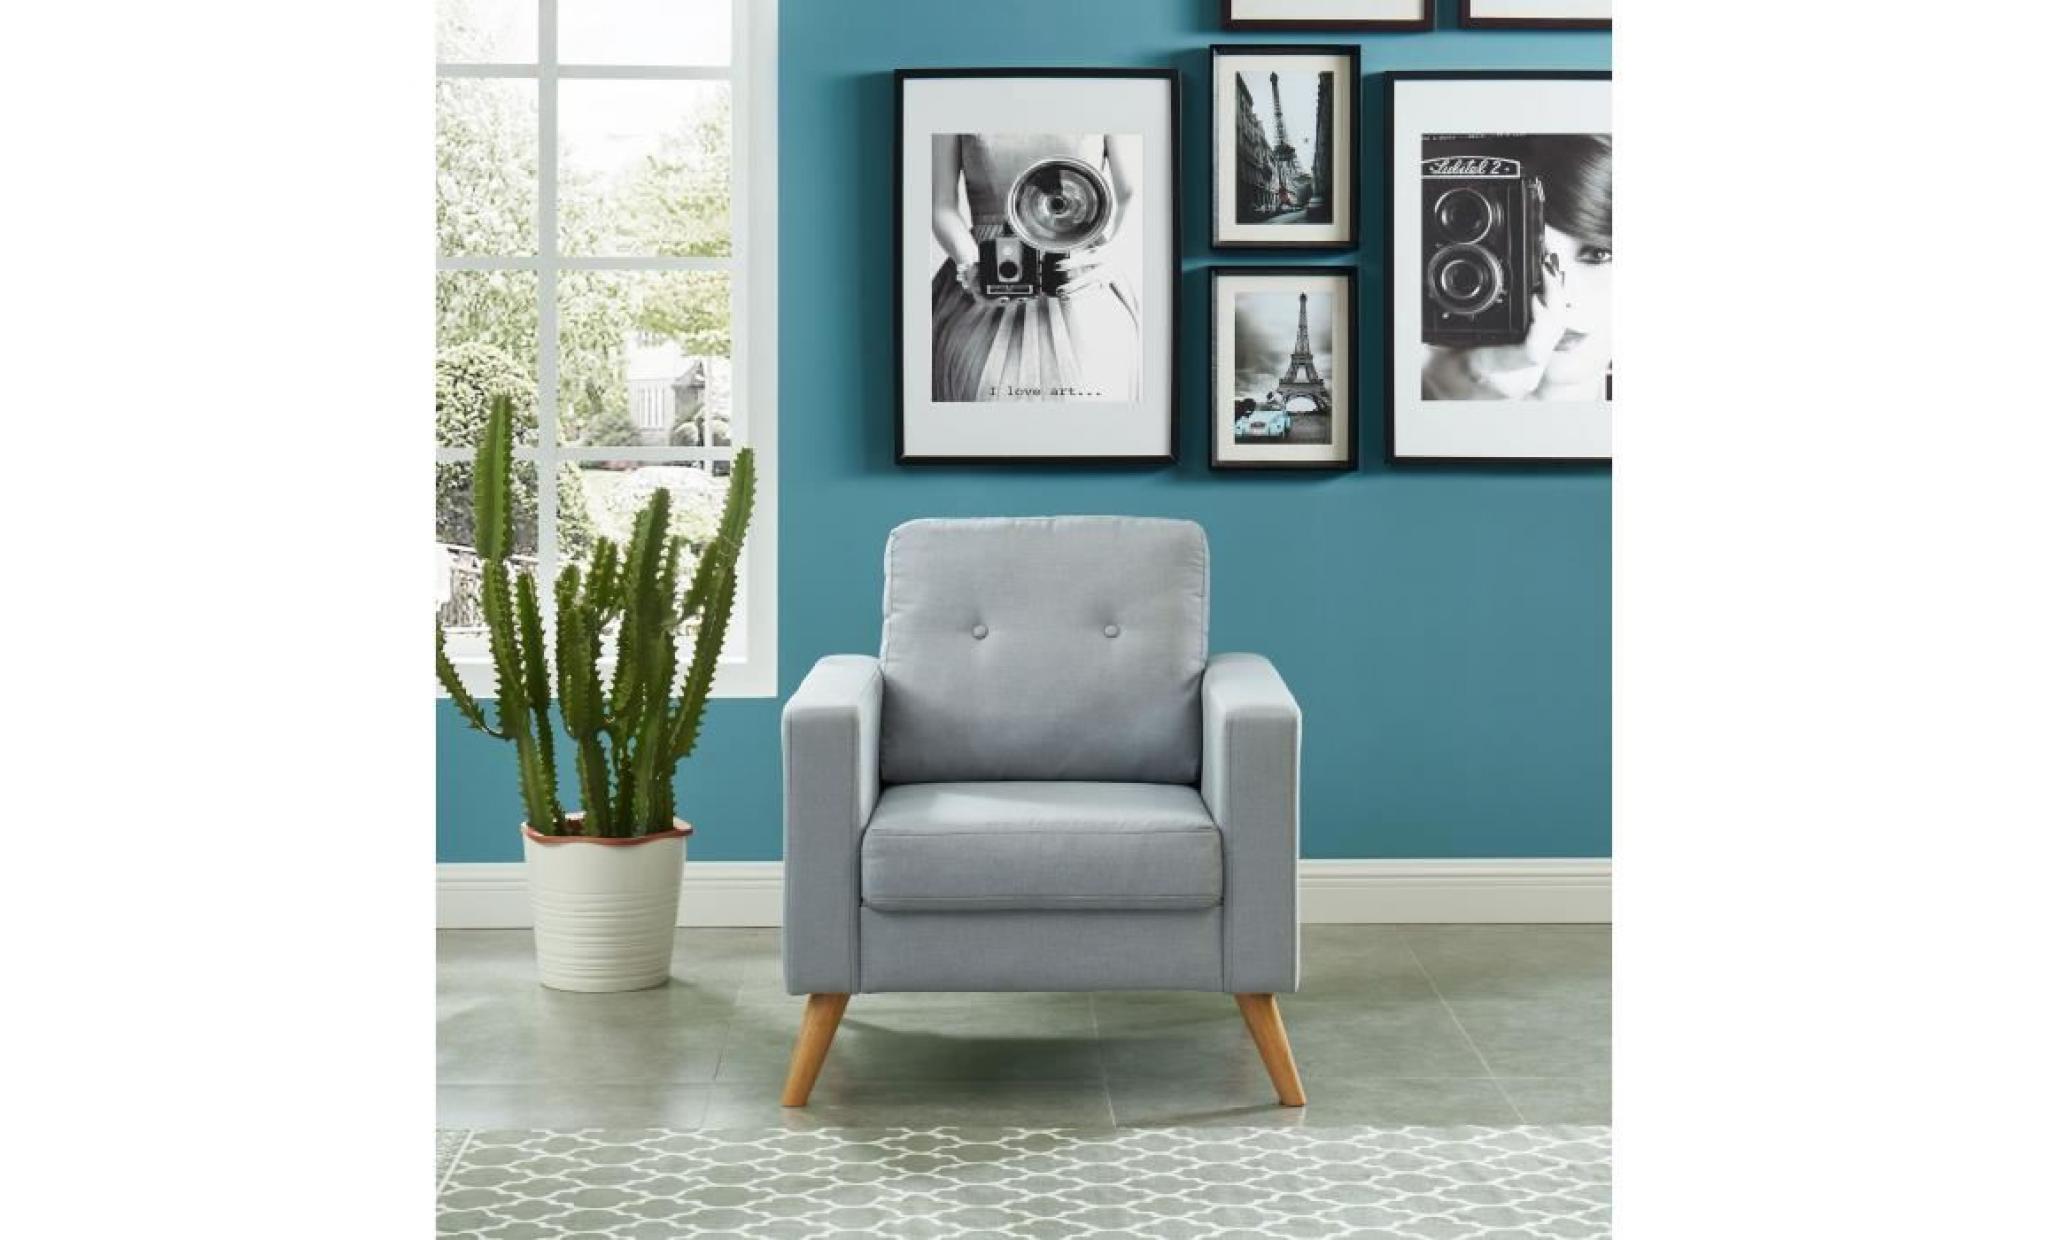 ibra fauteuil   tissu gris clair   scandinave   l 80 x p 83 cm pas cher